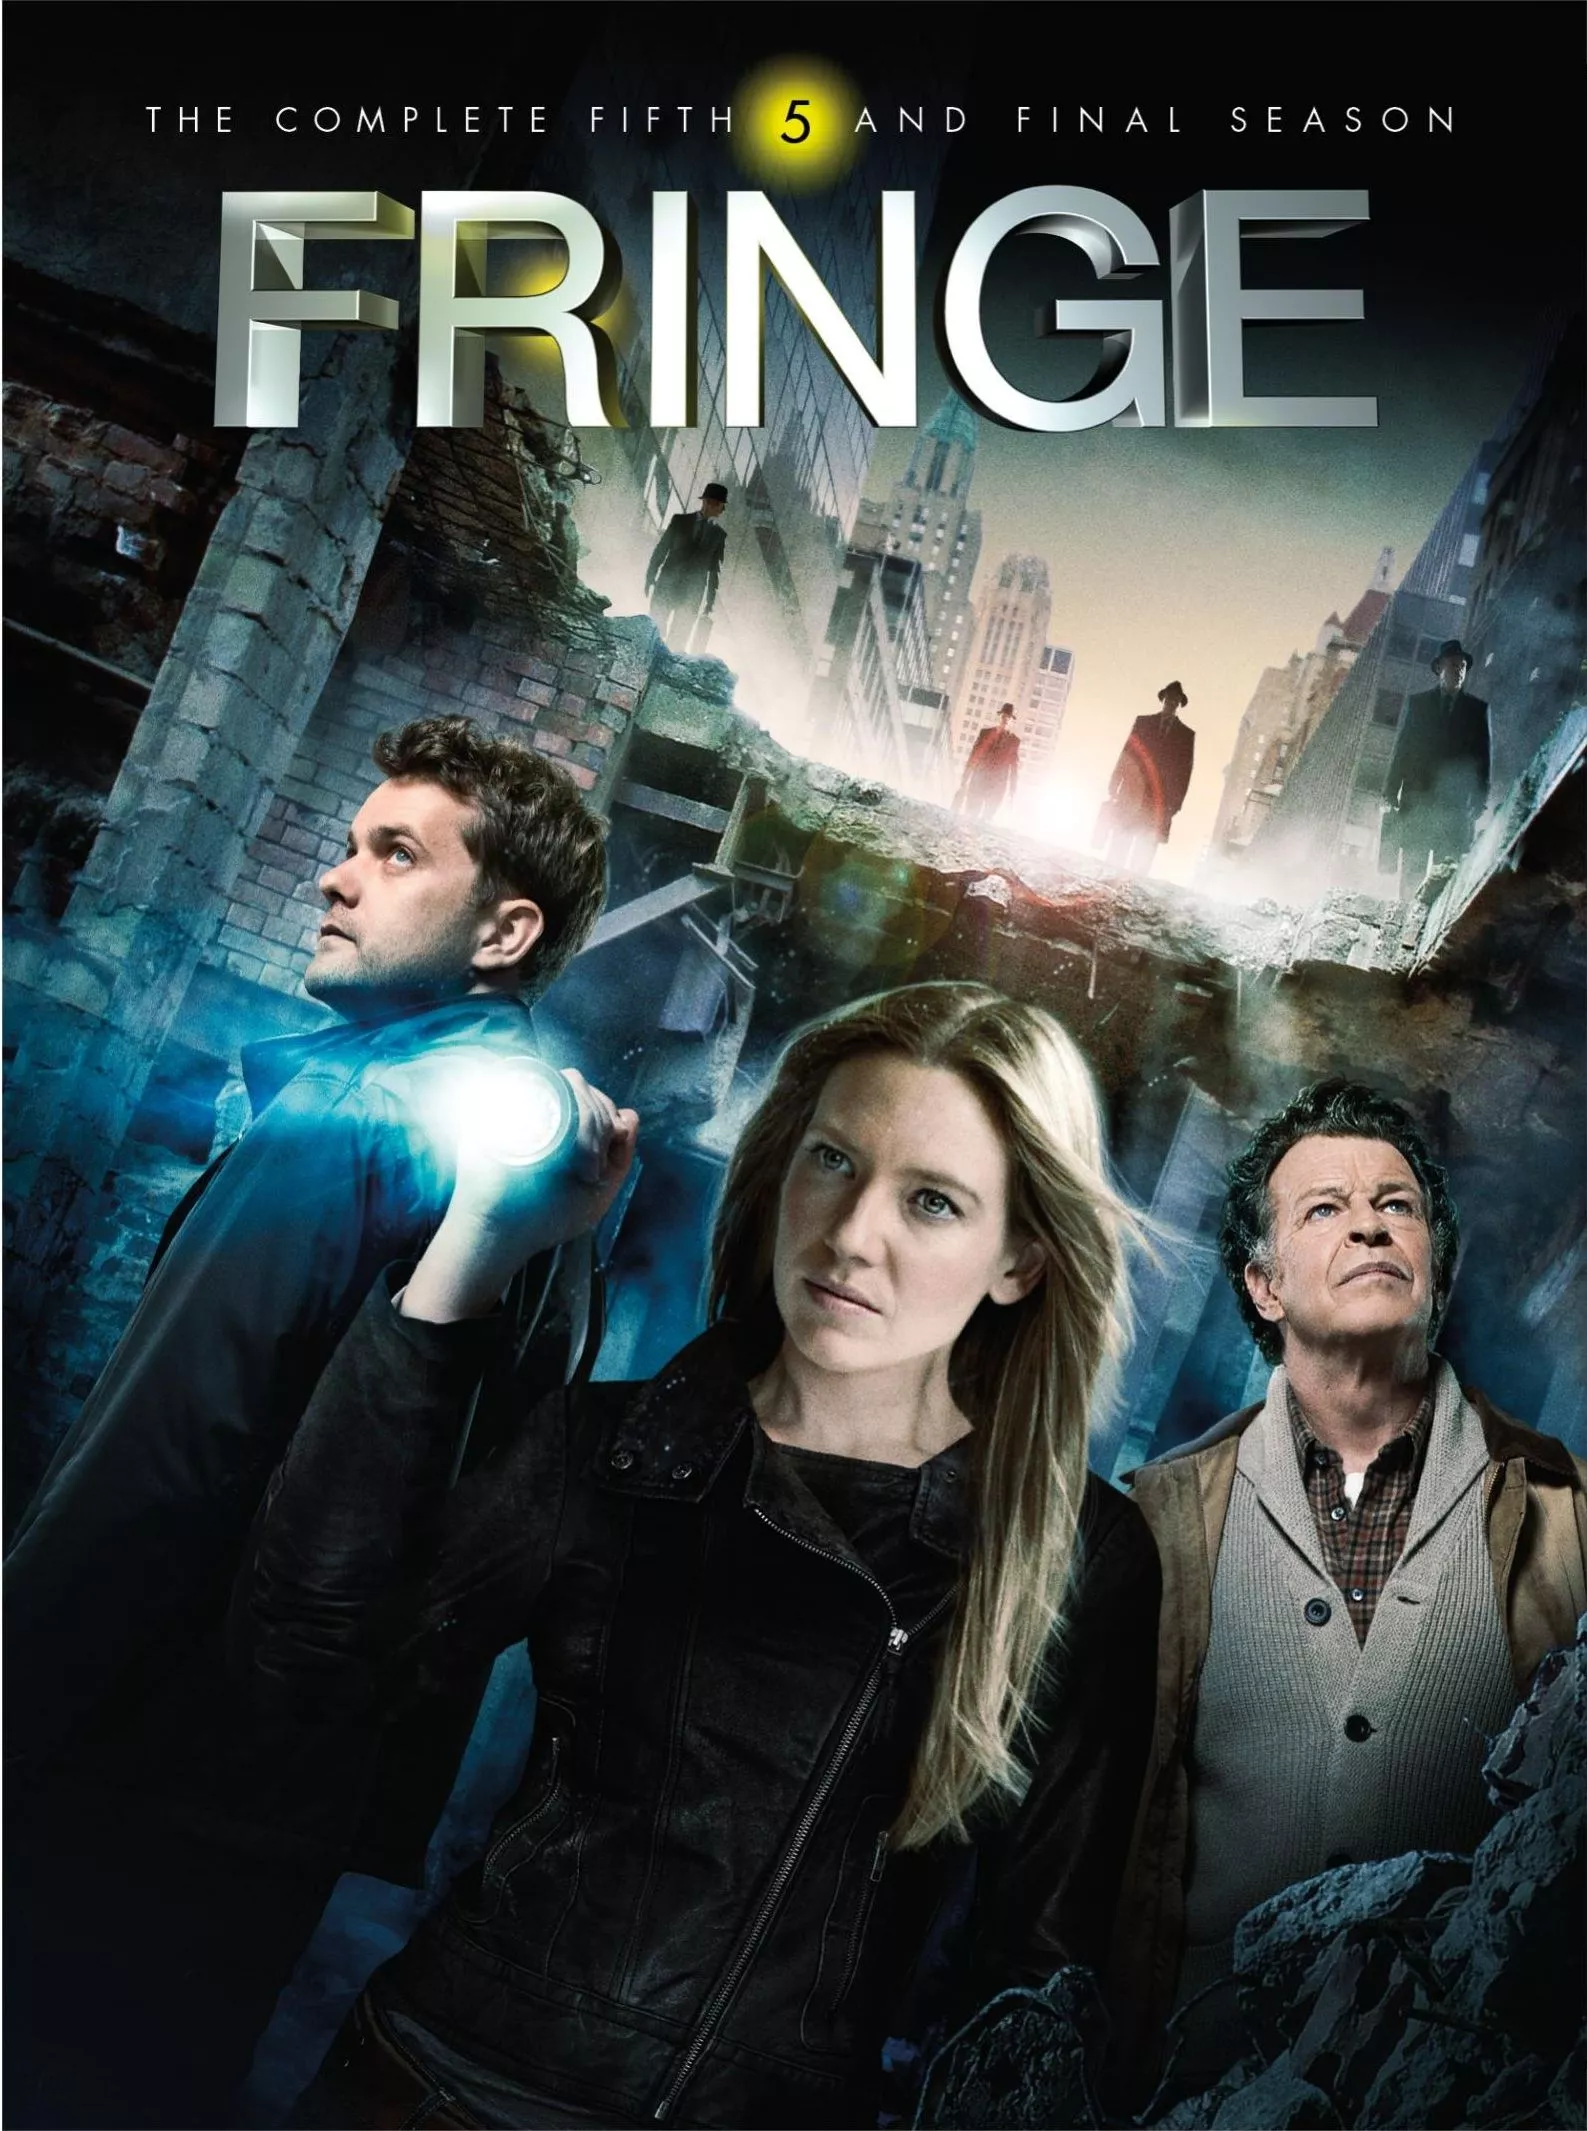 Fringe Season 5